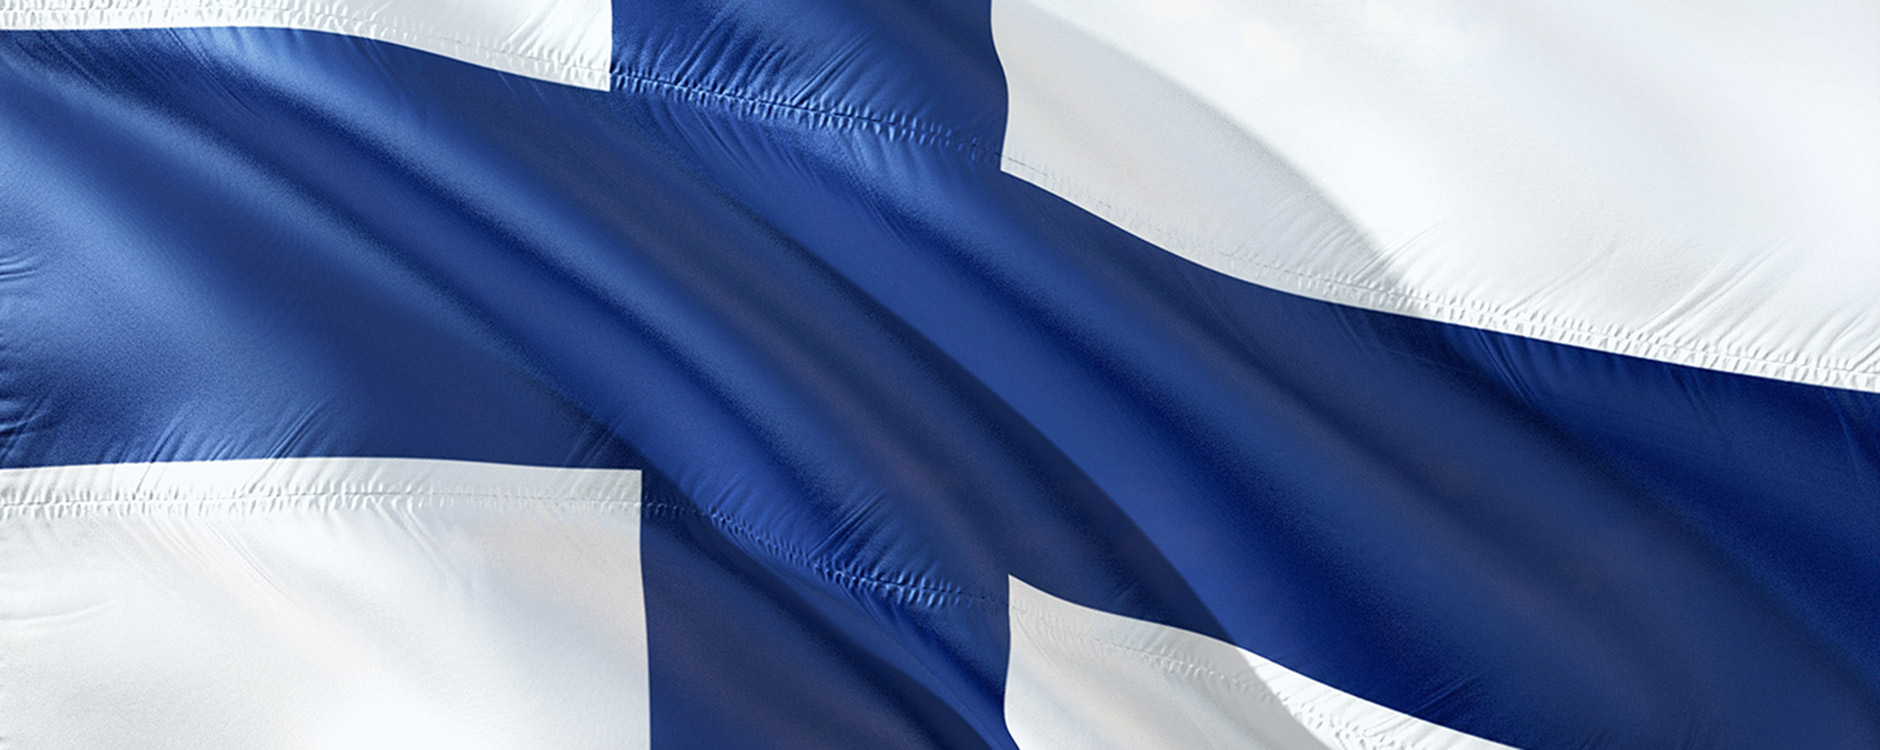 Finlandsflagga_webb.jpg